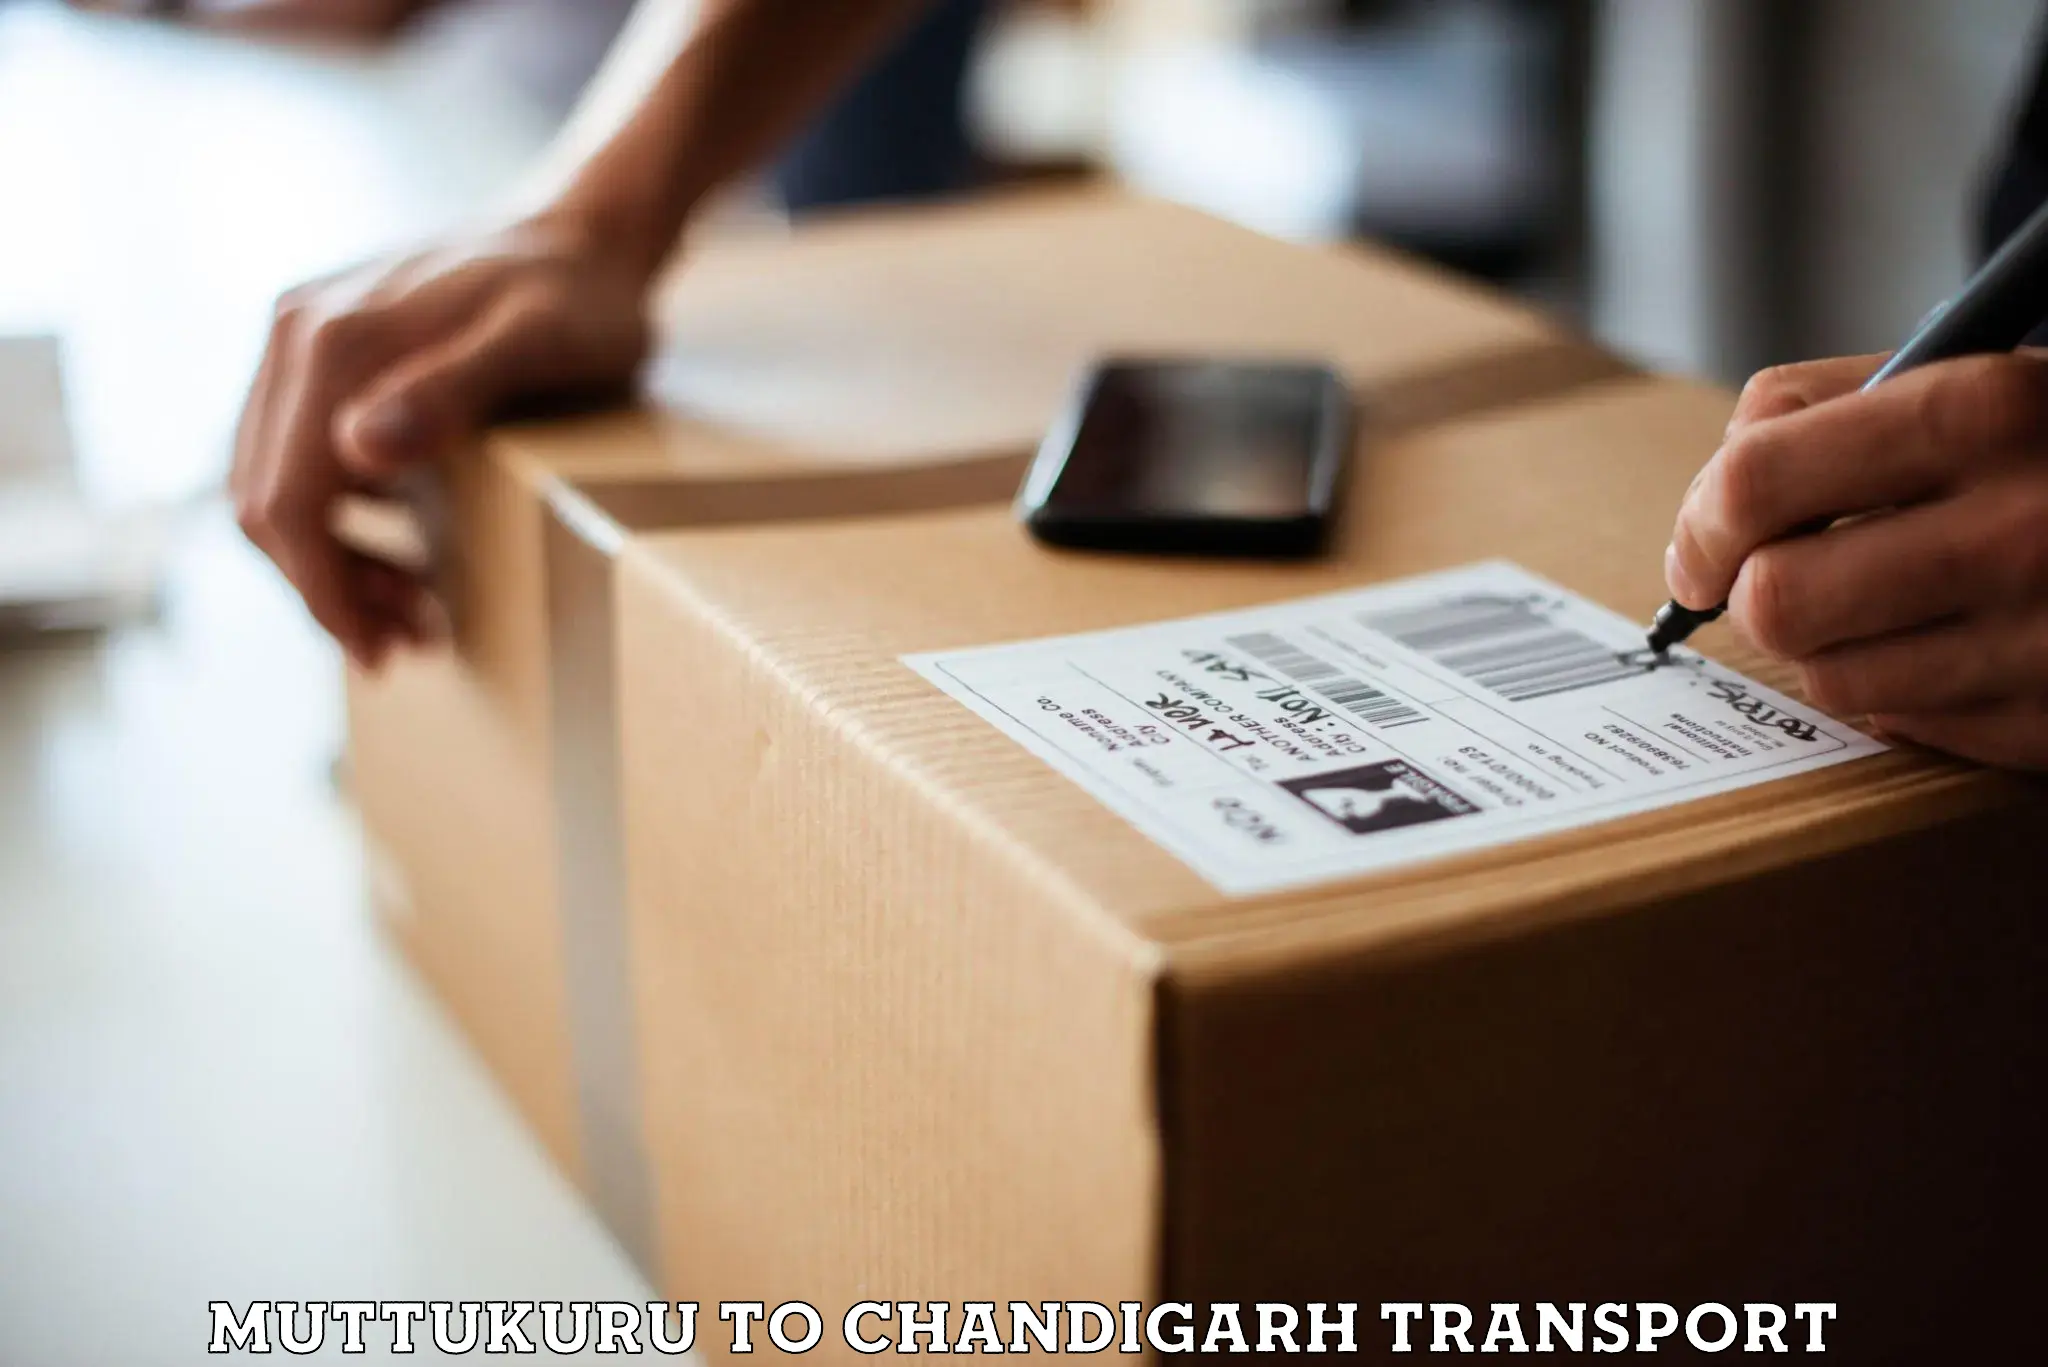 Furniture transport service Muttukuru to Kharar